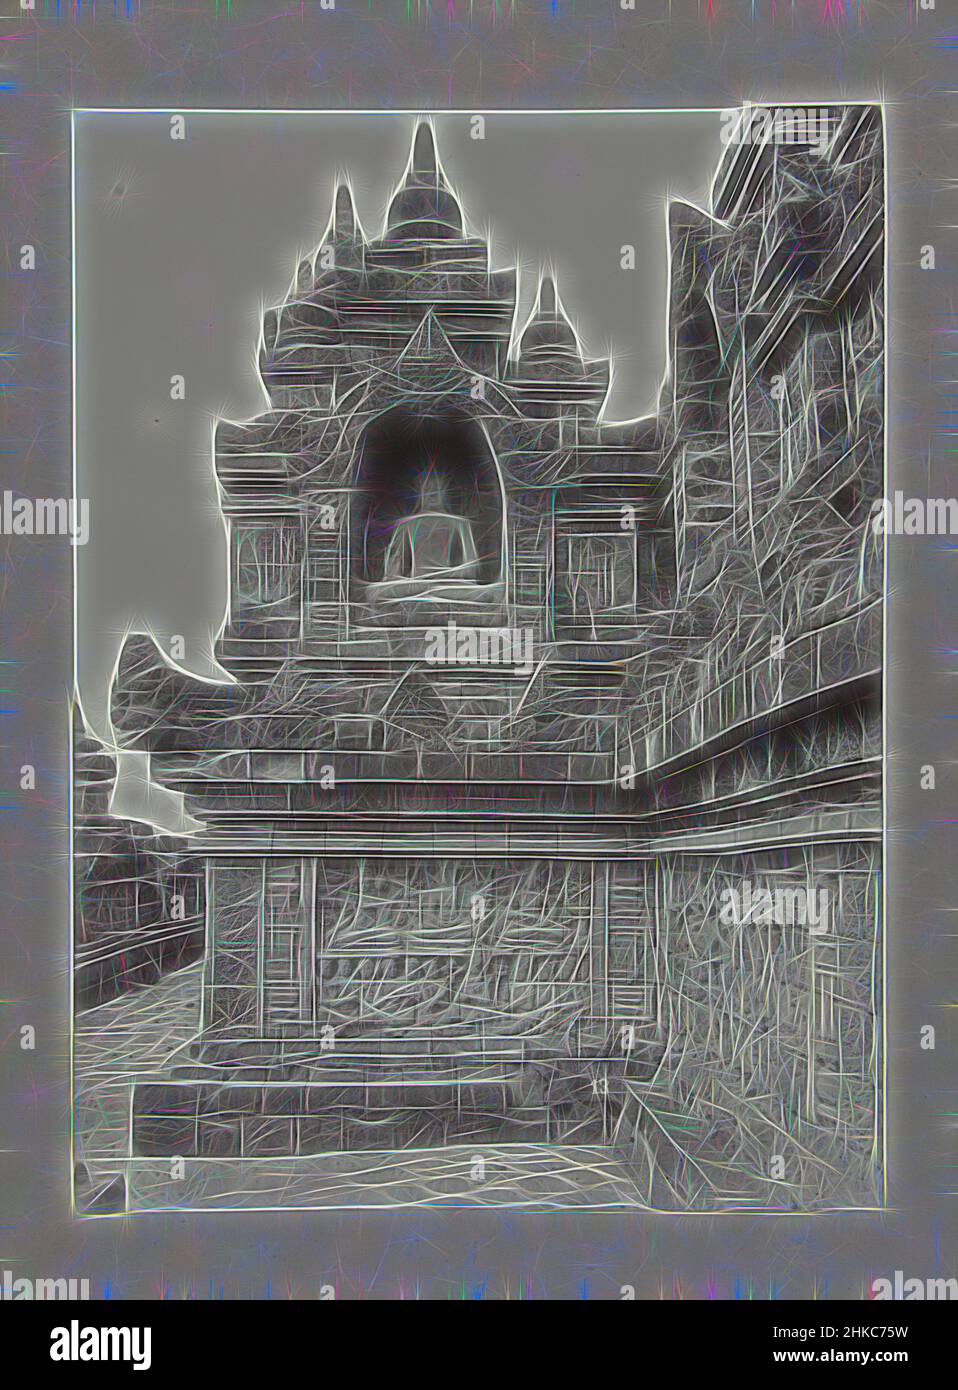 Inspiré par la Galerie du Borobudur (Borobudur) avec une statue de Bouddha, près de Magelang, pays-Bas est Indies80. Borobudur, Galerie du Borobudur (Borobudur) avec une statue de Bouddha, près de Magelang, les Indes orientales néerlandaises, Onnes Kurkdjian, Magelang, c. 1895 - c. 1915, papier, imprimé en gélatine argentée, repensé par Artotop. L'art classique réinventé avec une touche moderne. Conception de lumière chaleureuse et gaie, de luminosité et de rayonnement de lumière. La photographie s'inspire du surréalisme et du futurisme, embrassant l'énergie dynamique de la technologie moderne, du mouvement, de la vitesse et révolutionne la culture Banque D'Images